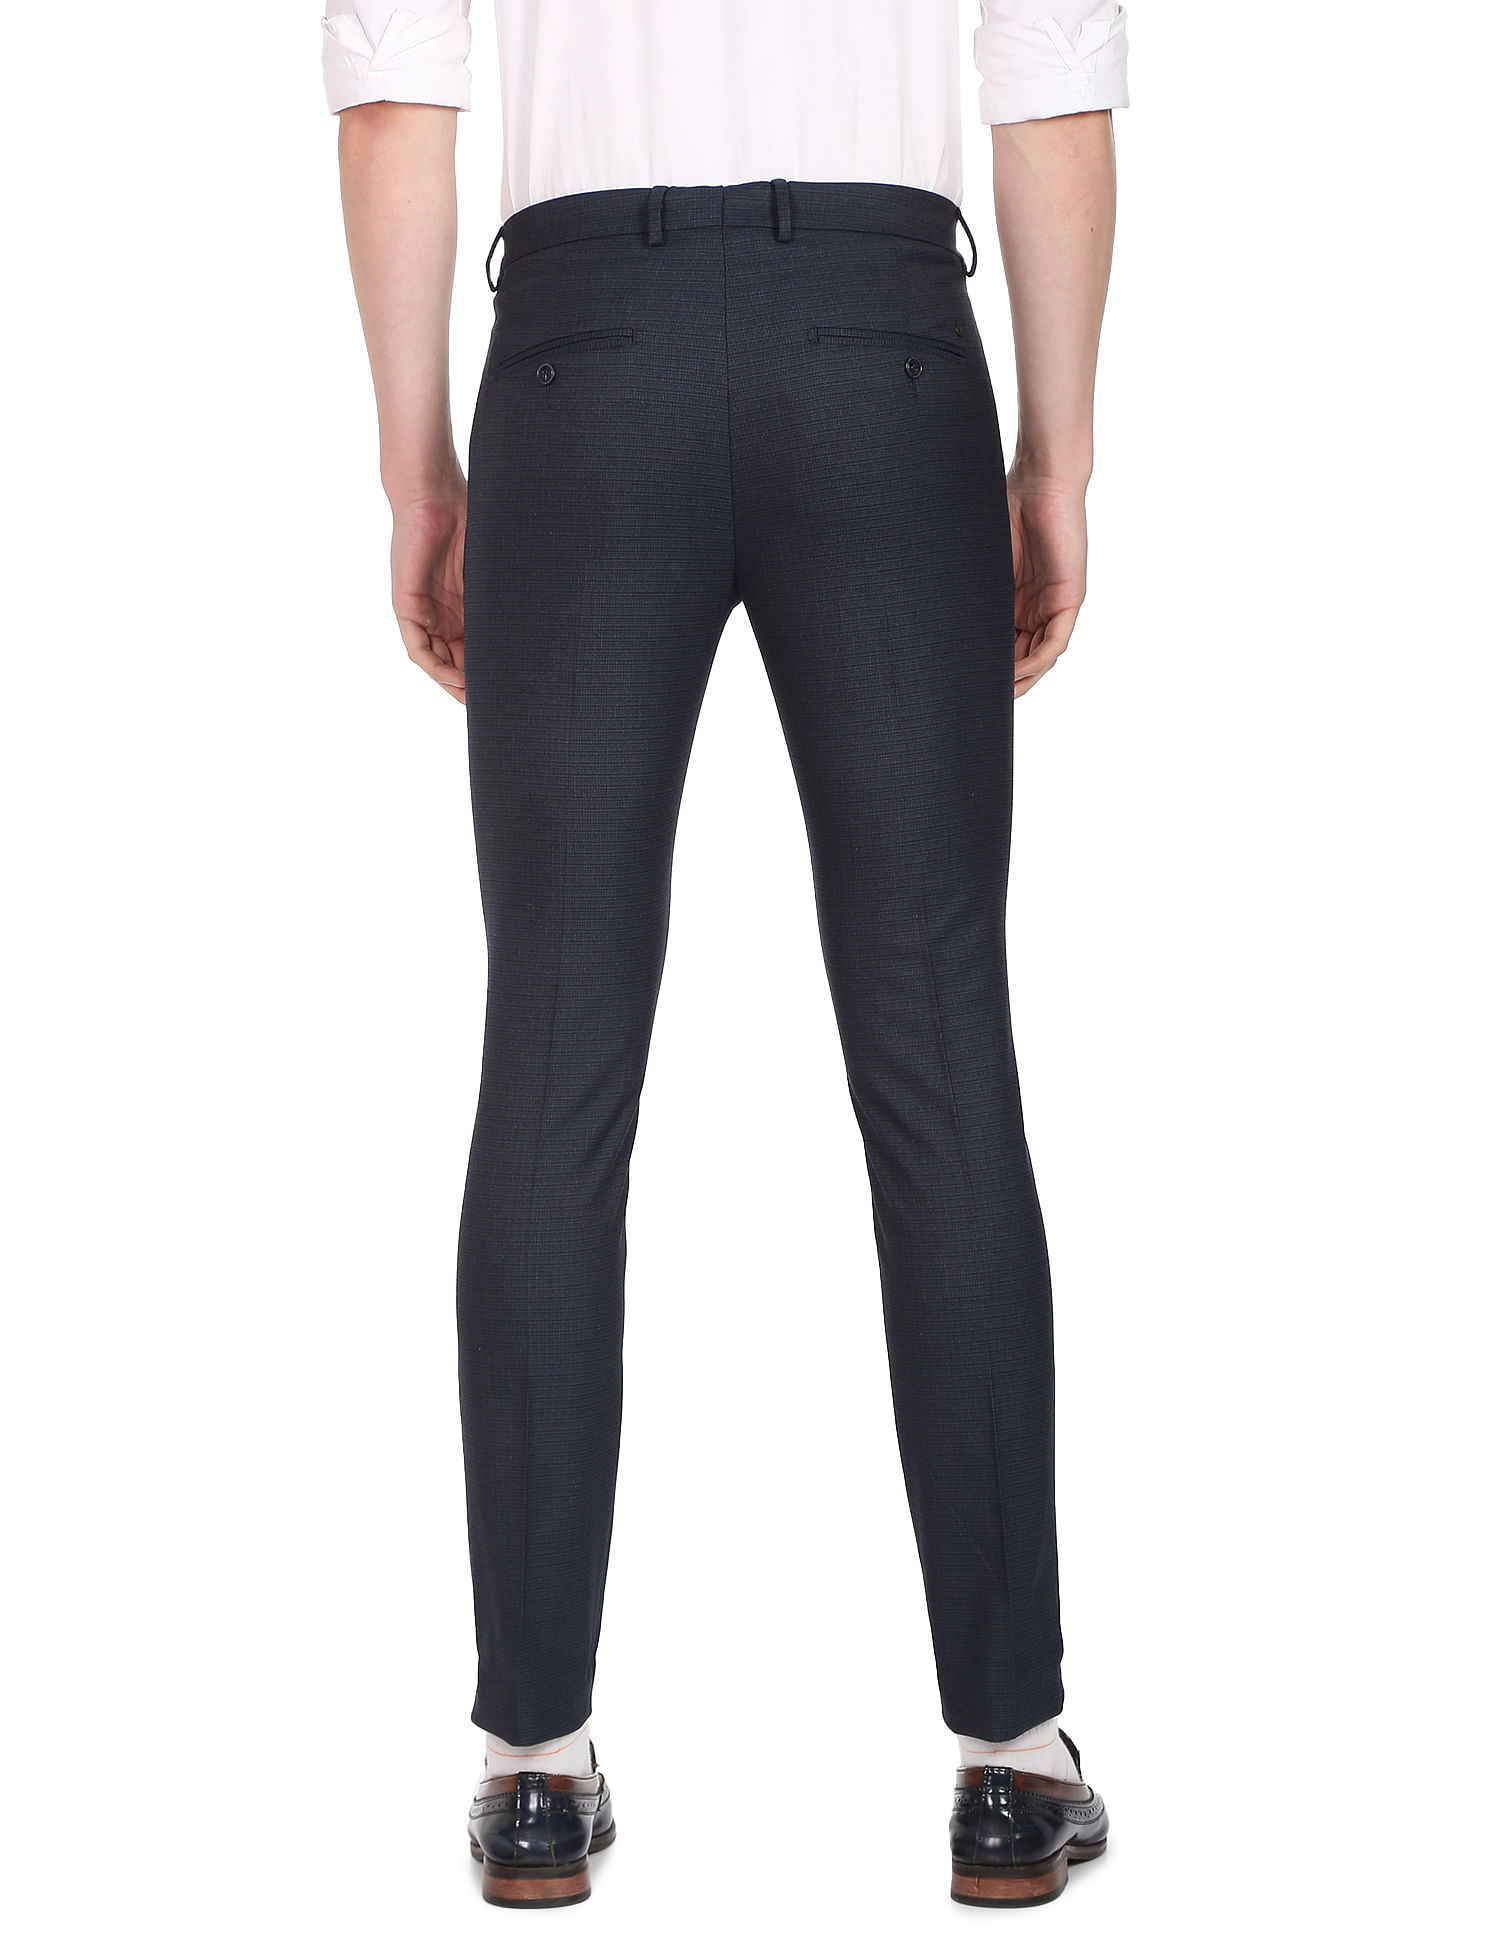 Topman smart super skinny trousers in black | ASOS